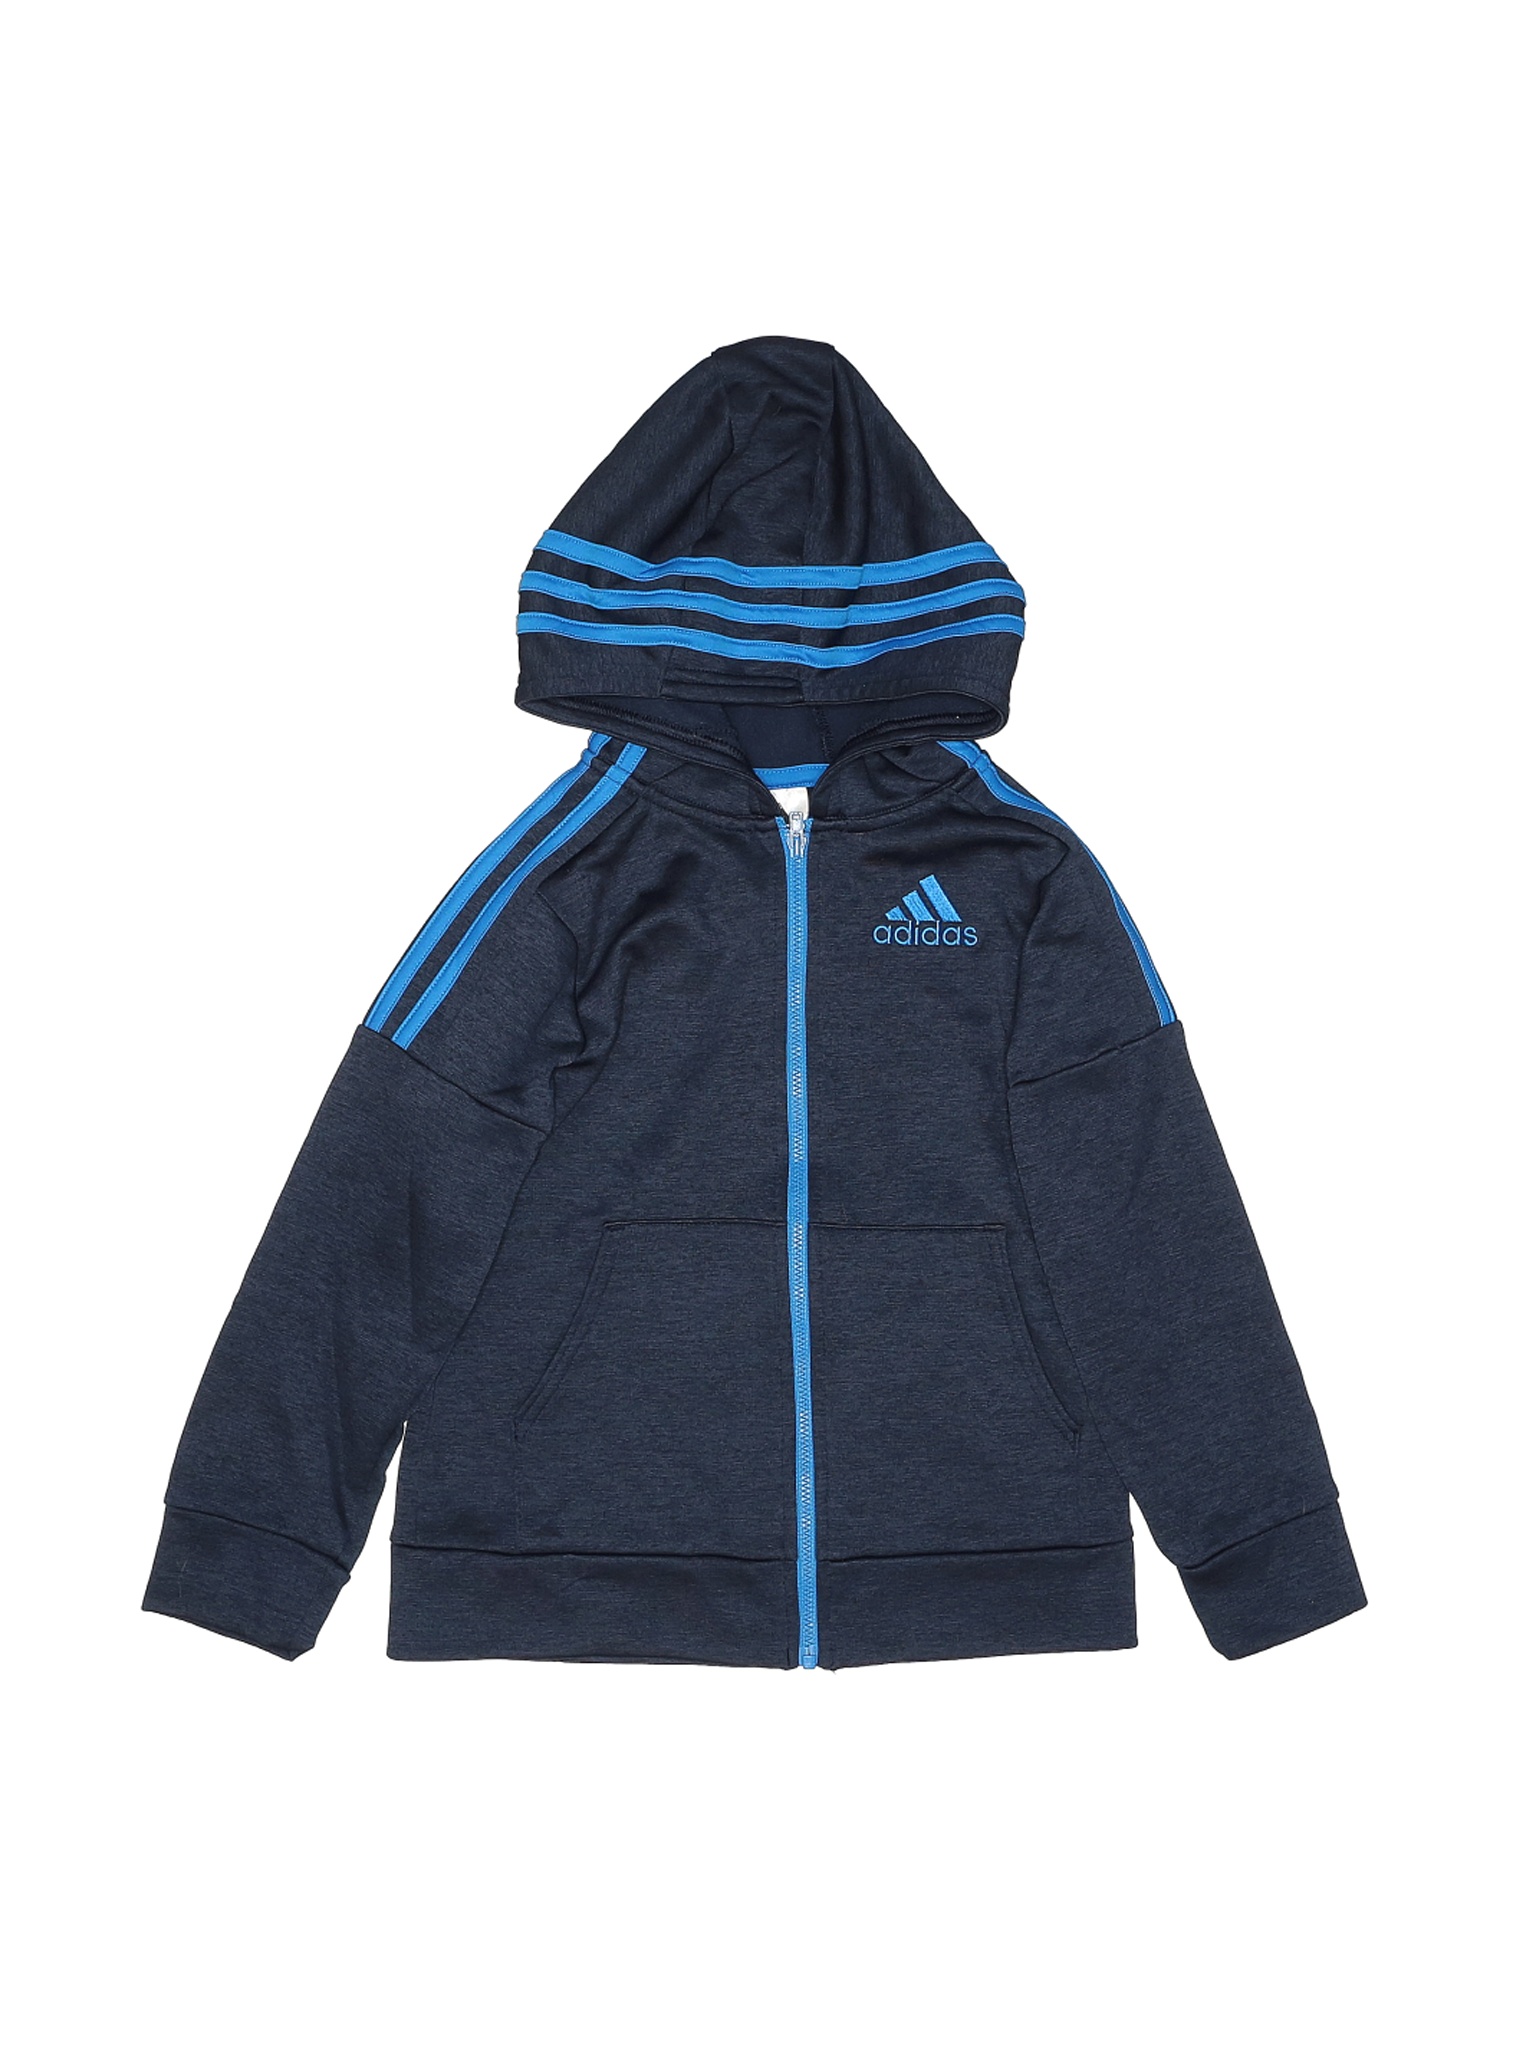 Adidas Boys Blue Zip Up Hoodie 7 | eBay